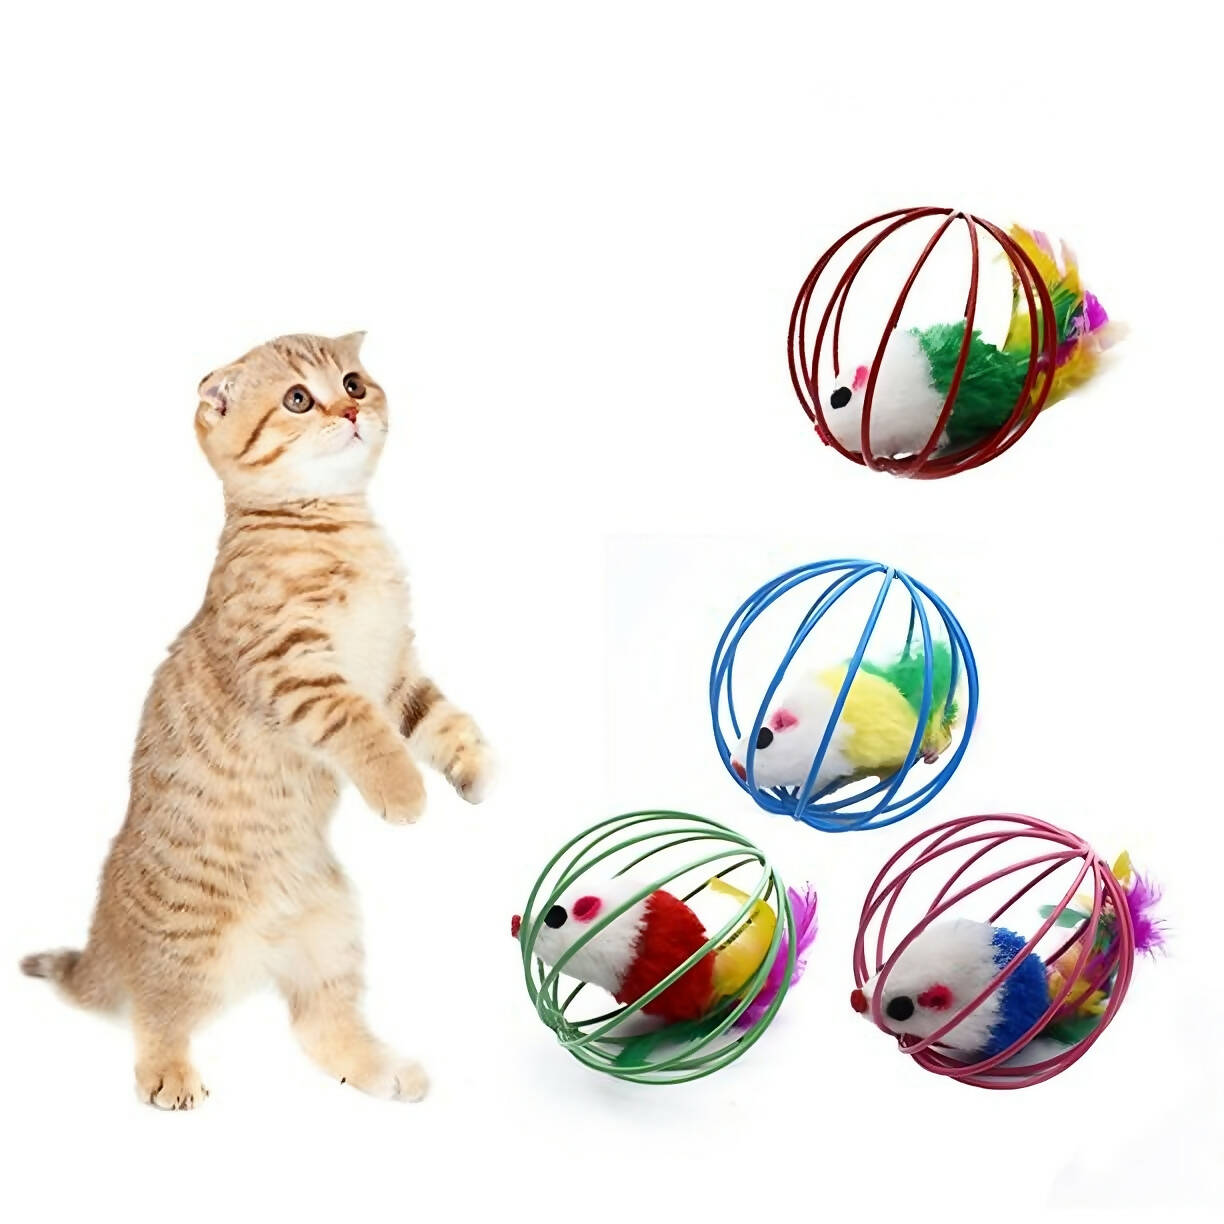 لعبة مسلية للقطط والحيوانات الاليفة مكونة من دمية فار في قفص دائري